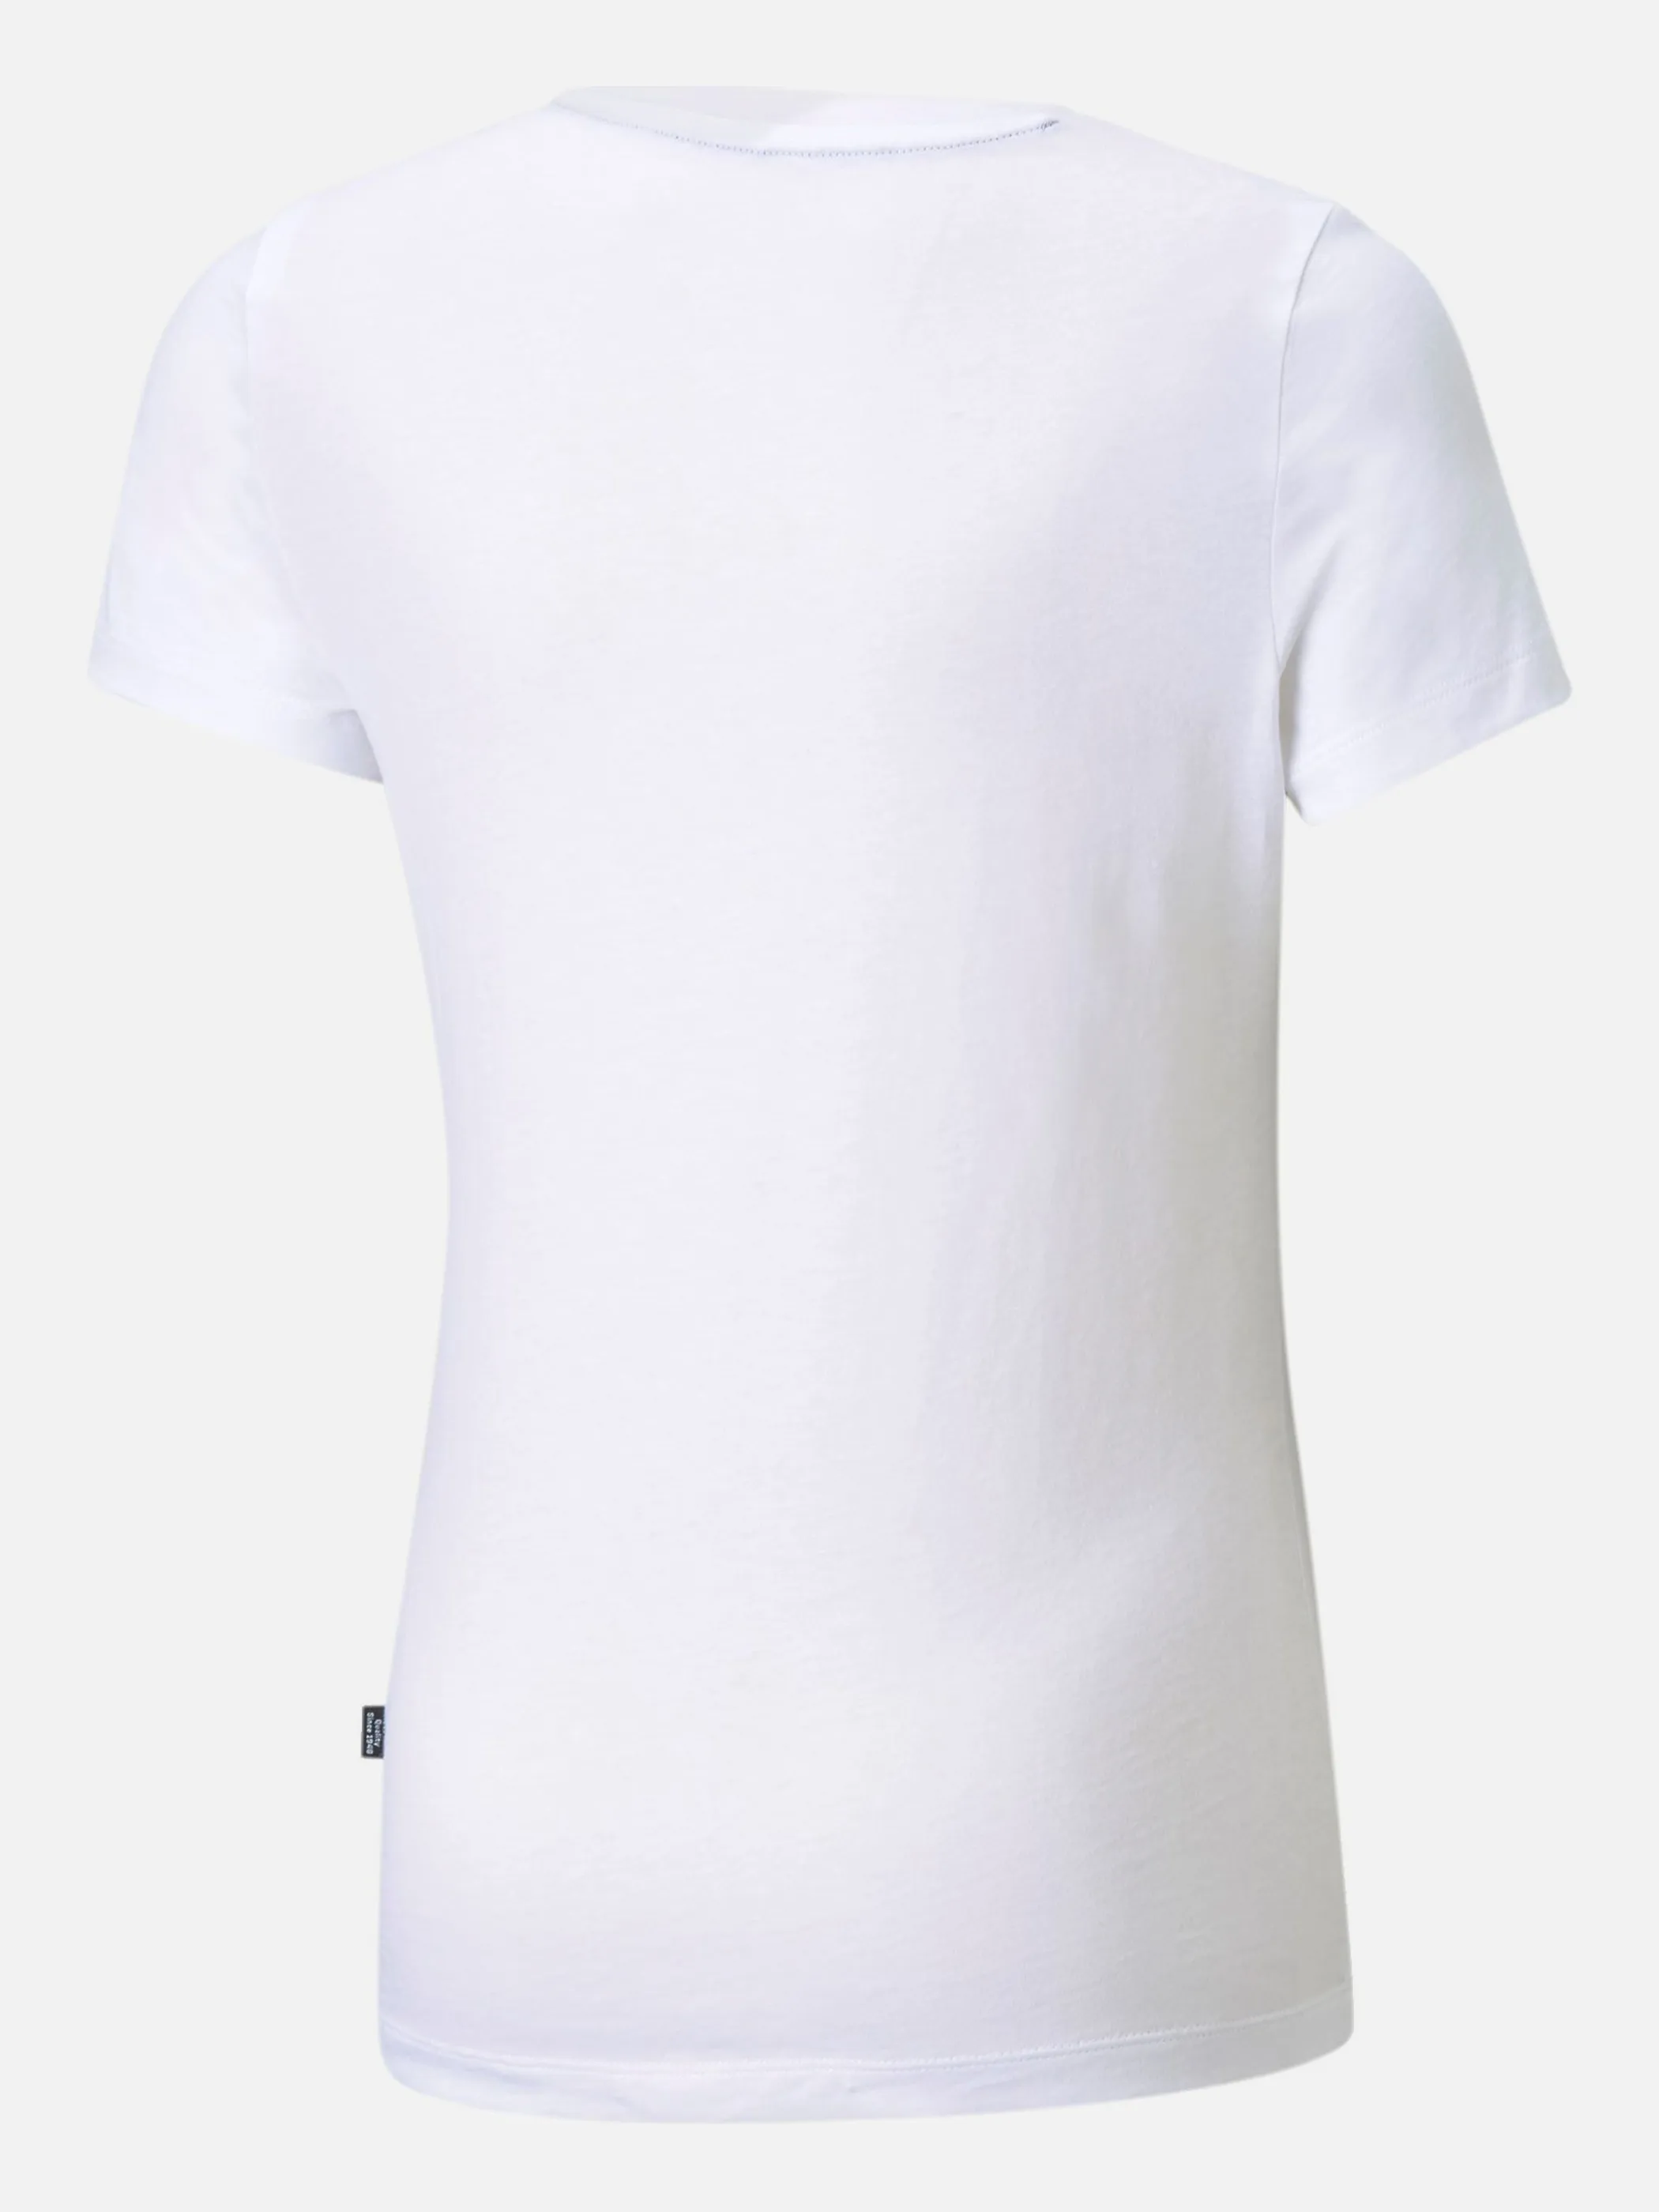 Puma 587029 Md-T-Shirt mit Logo Weiß 856620 02 2